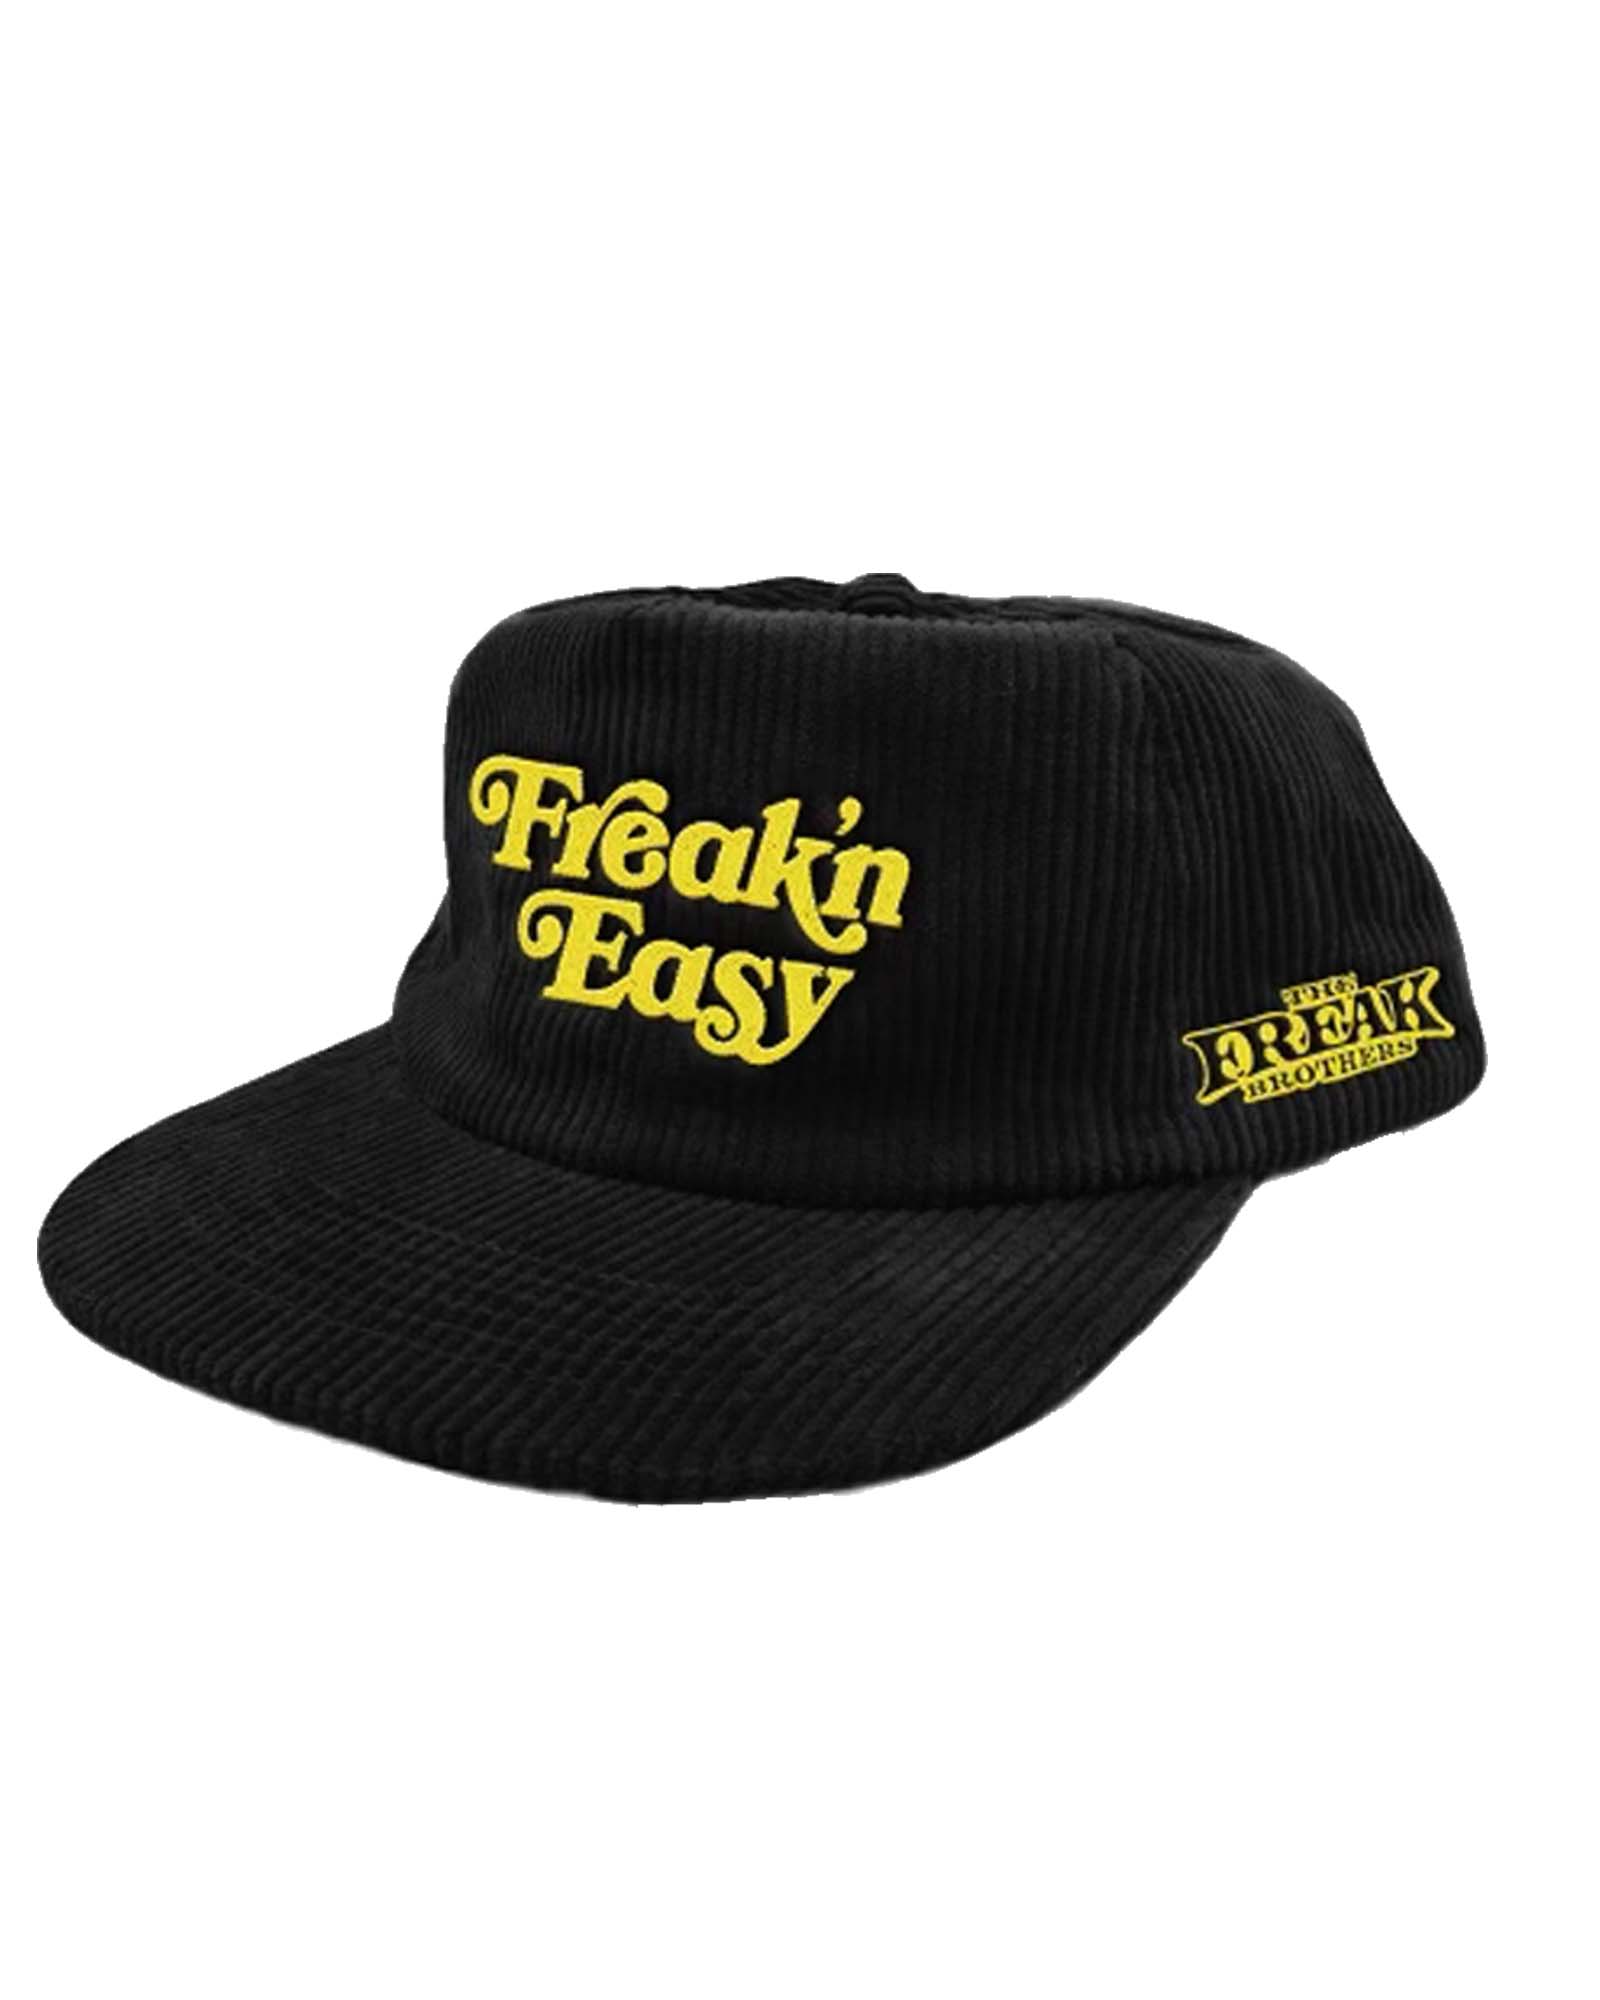 Freak\'n Easy Snapback The Hat – Freak Brothers